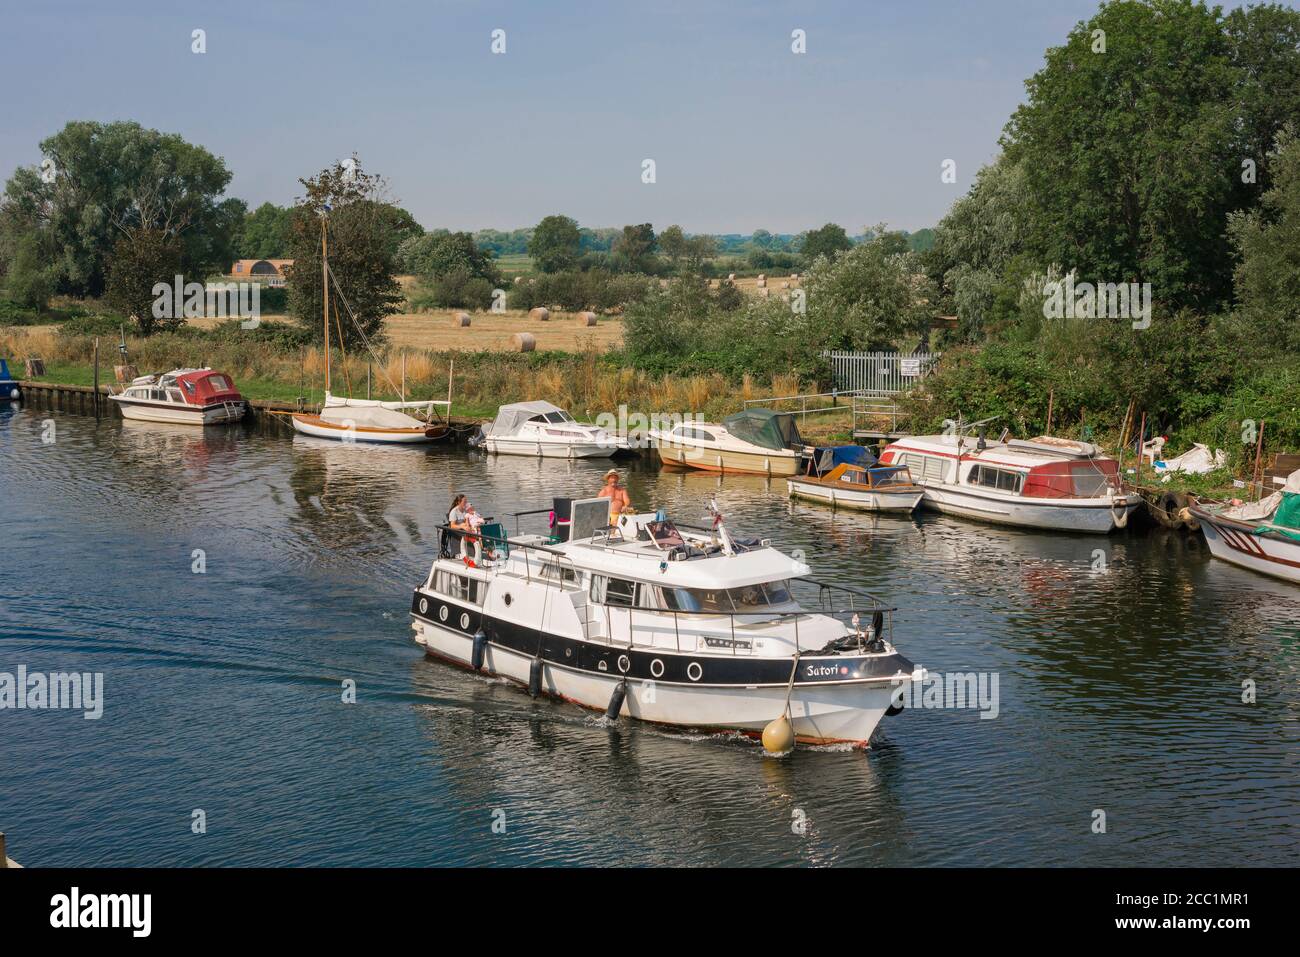 Vacances en bateau, vue en été d'un bateau de plaisance naviguant sur la rivière Waveney avec des bateaux amarrés sur le côté Norfolk de la rivière, East Anglia, Royaume-Uni Banque D'Images